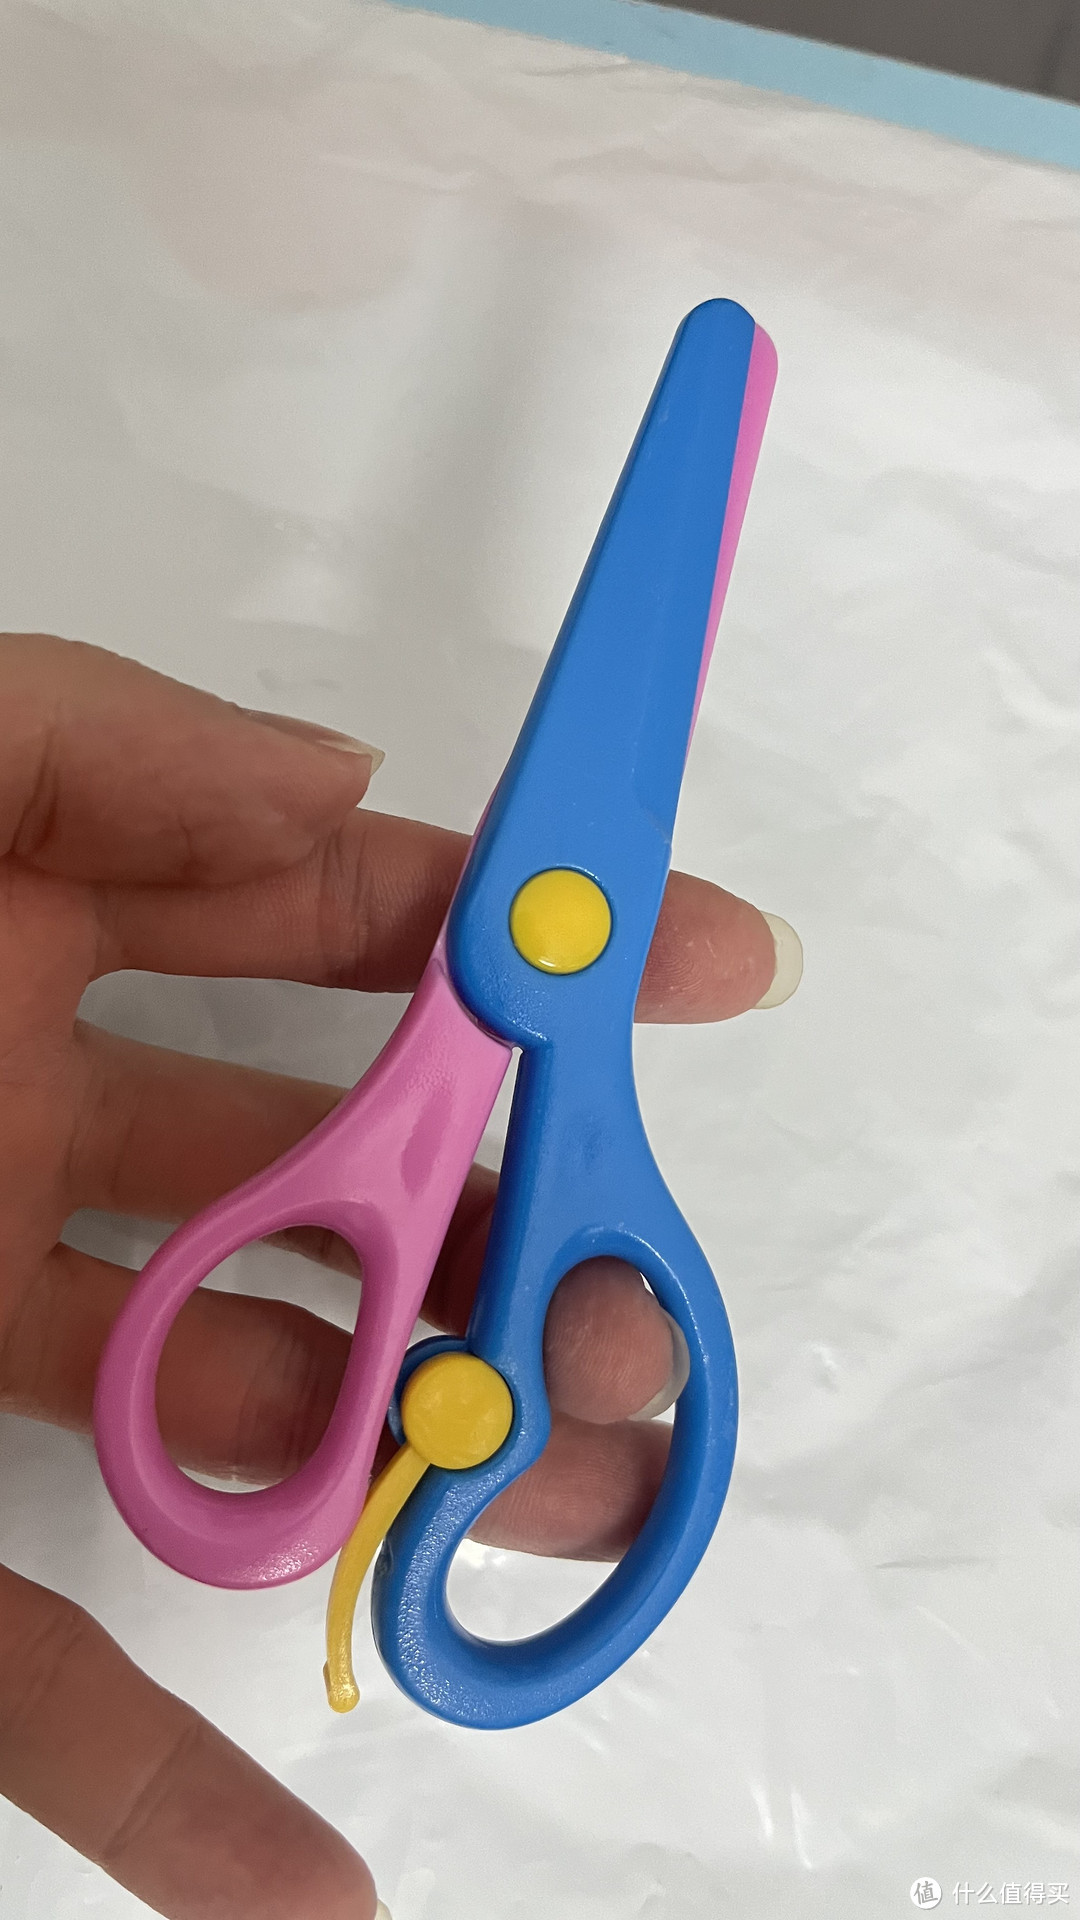 这个小剪刀给小孩子用的话刚刚好。